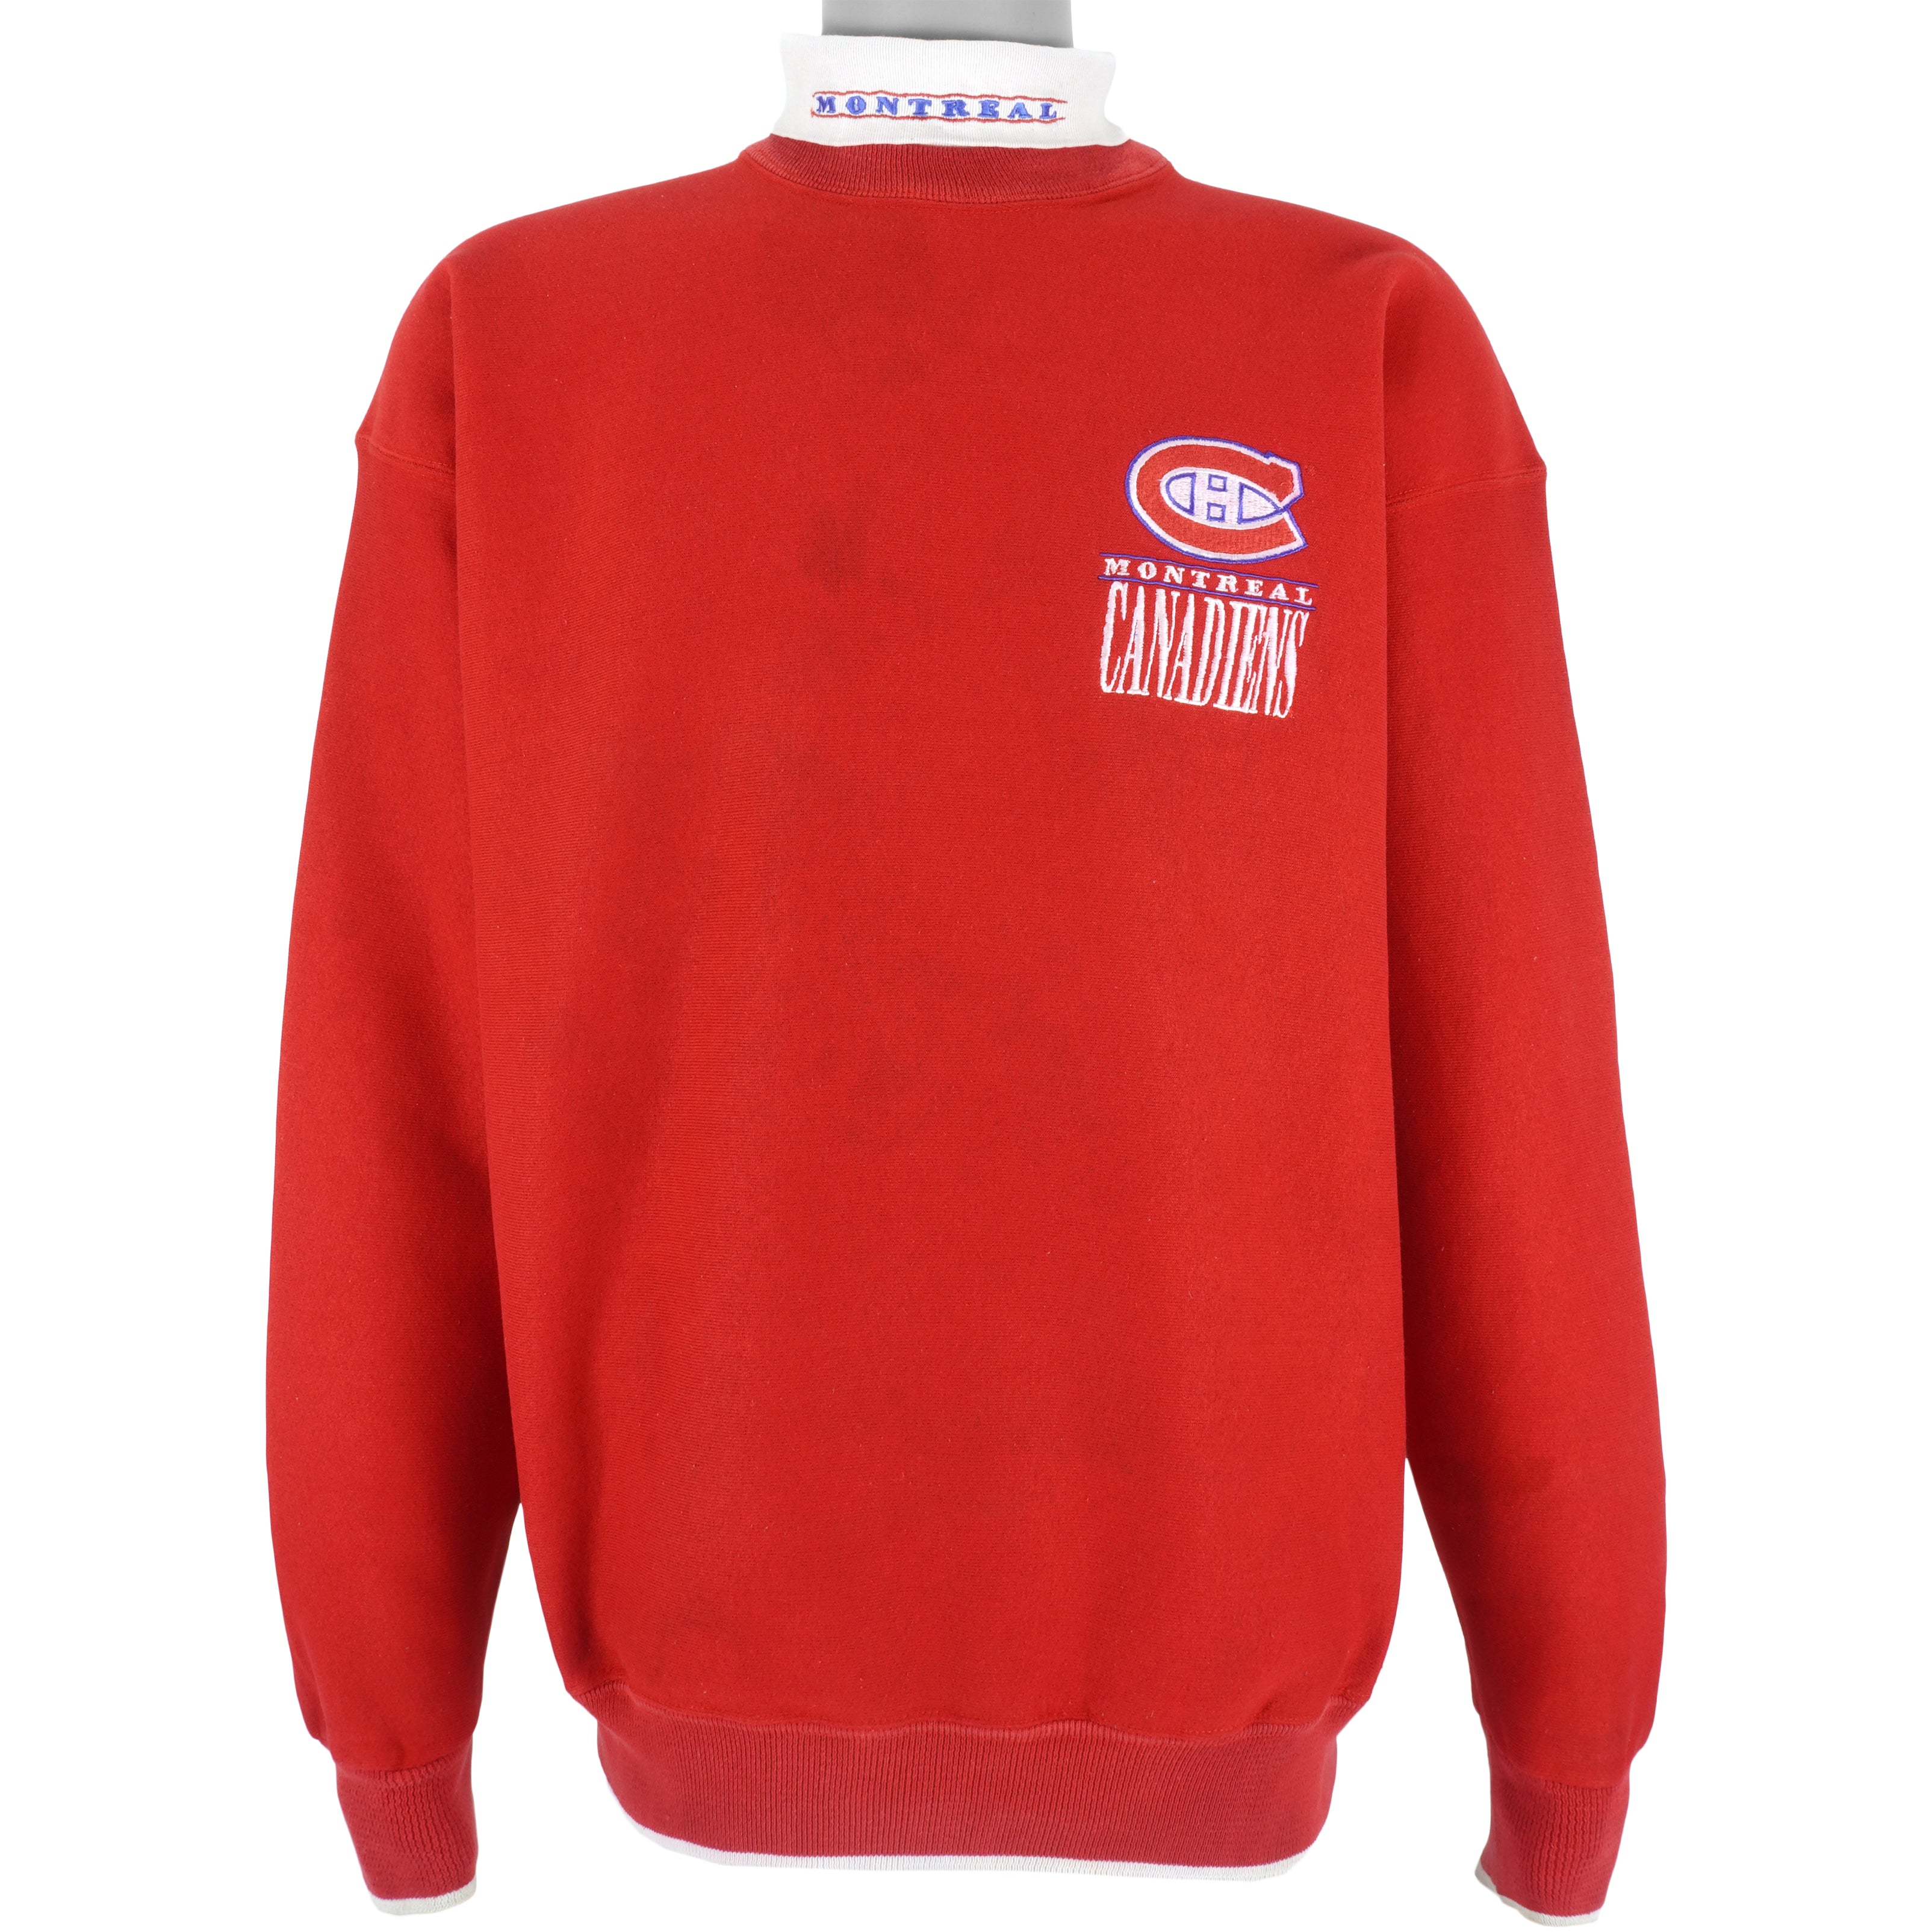 Montreal Canadiens Habs Vintage NHL Crewneck Sweatshirt Hoodie